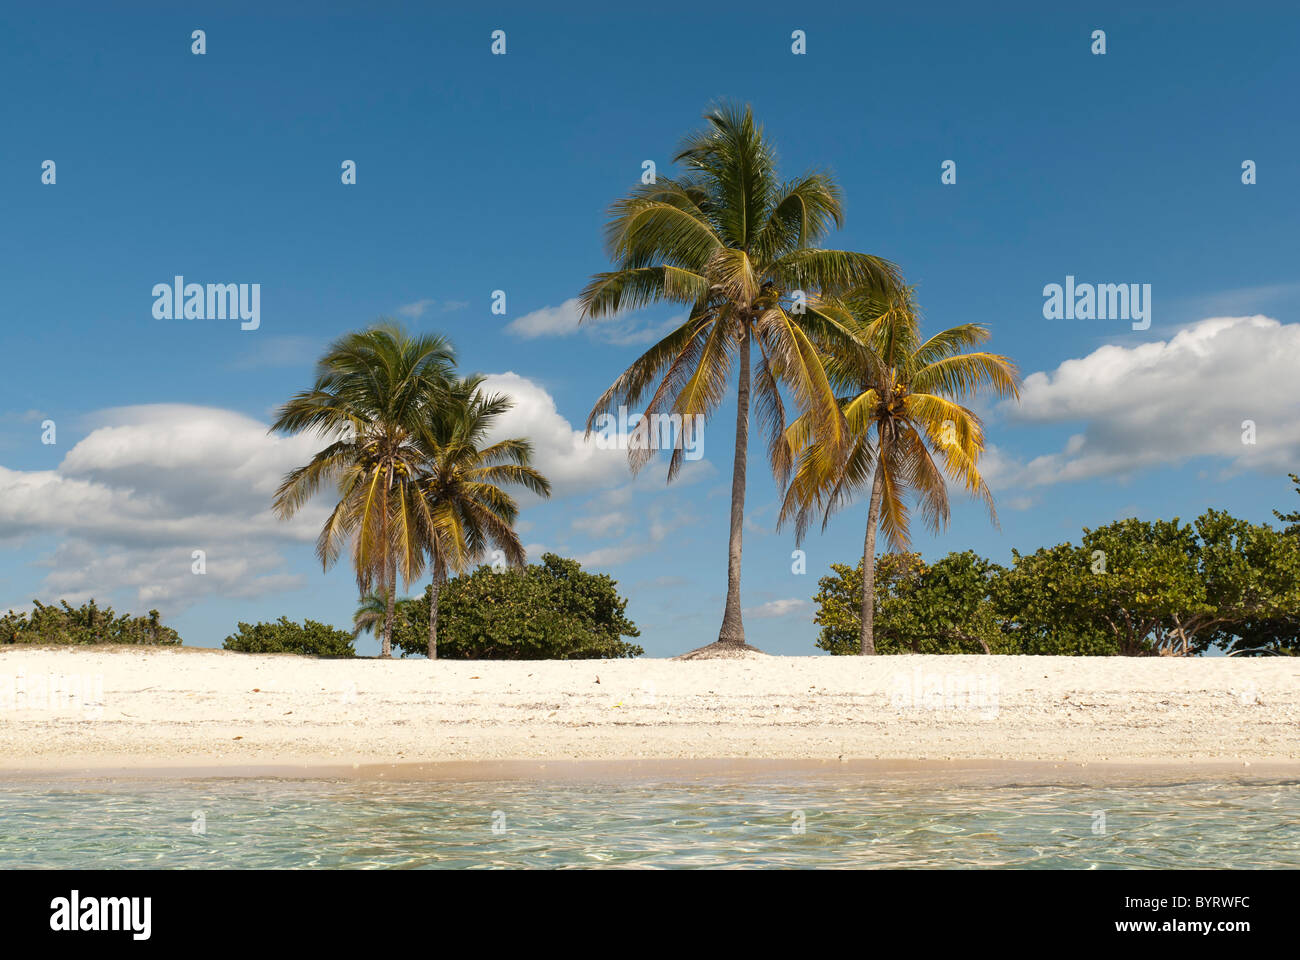 Playa Giron. Plage des Caraïbes avec palmiers et sable blanc, de Cuba, des Caraïbes Banque D'Images